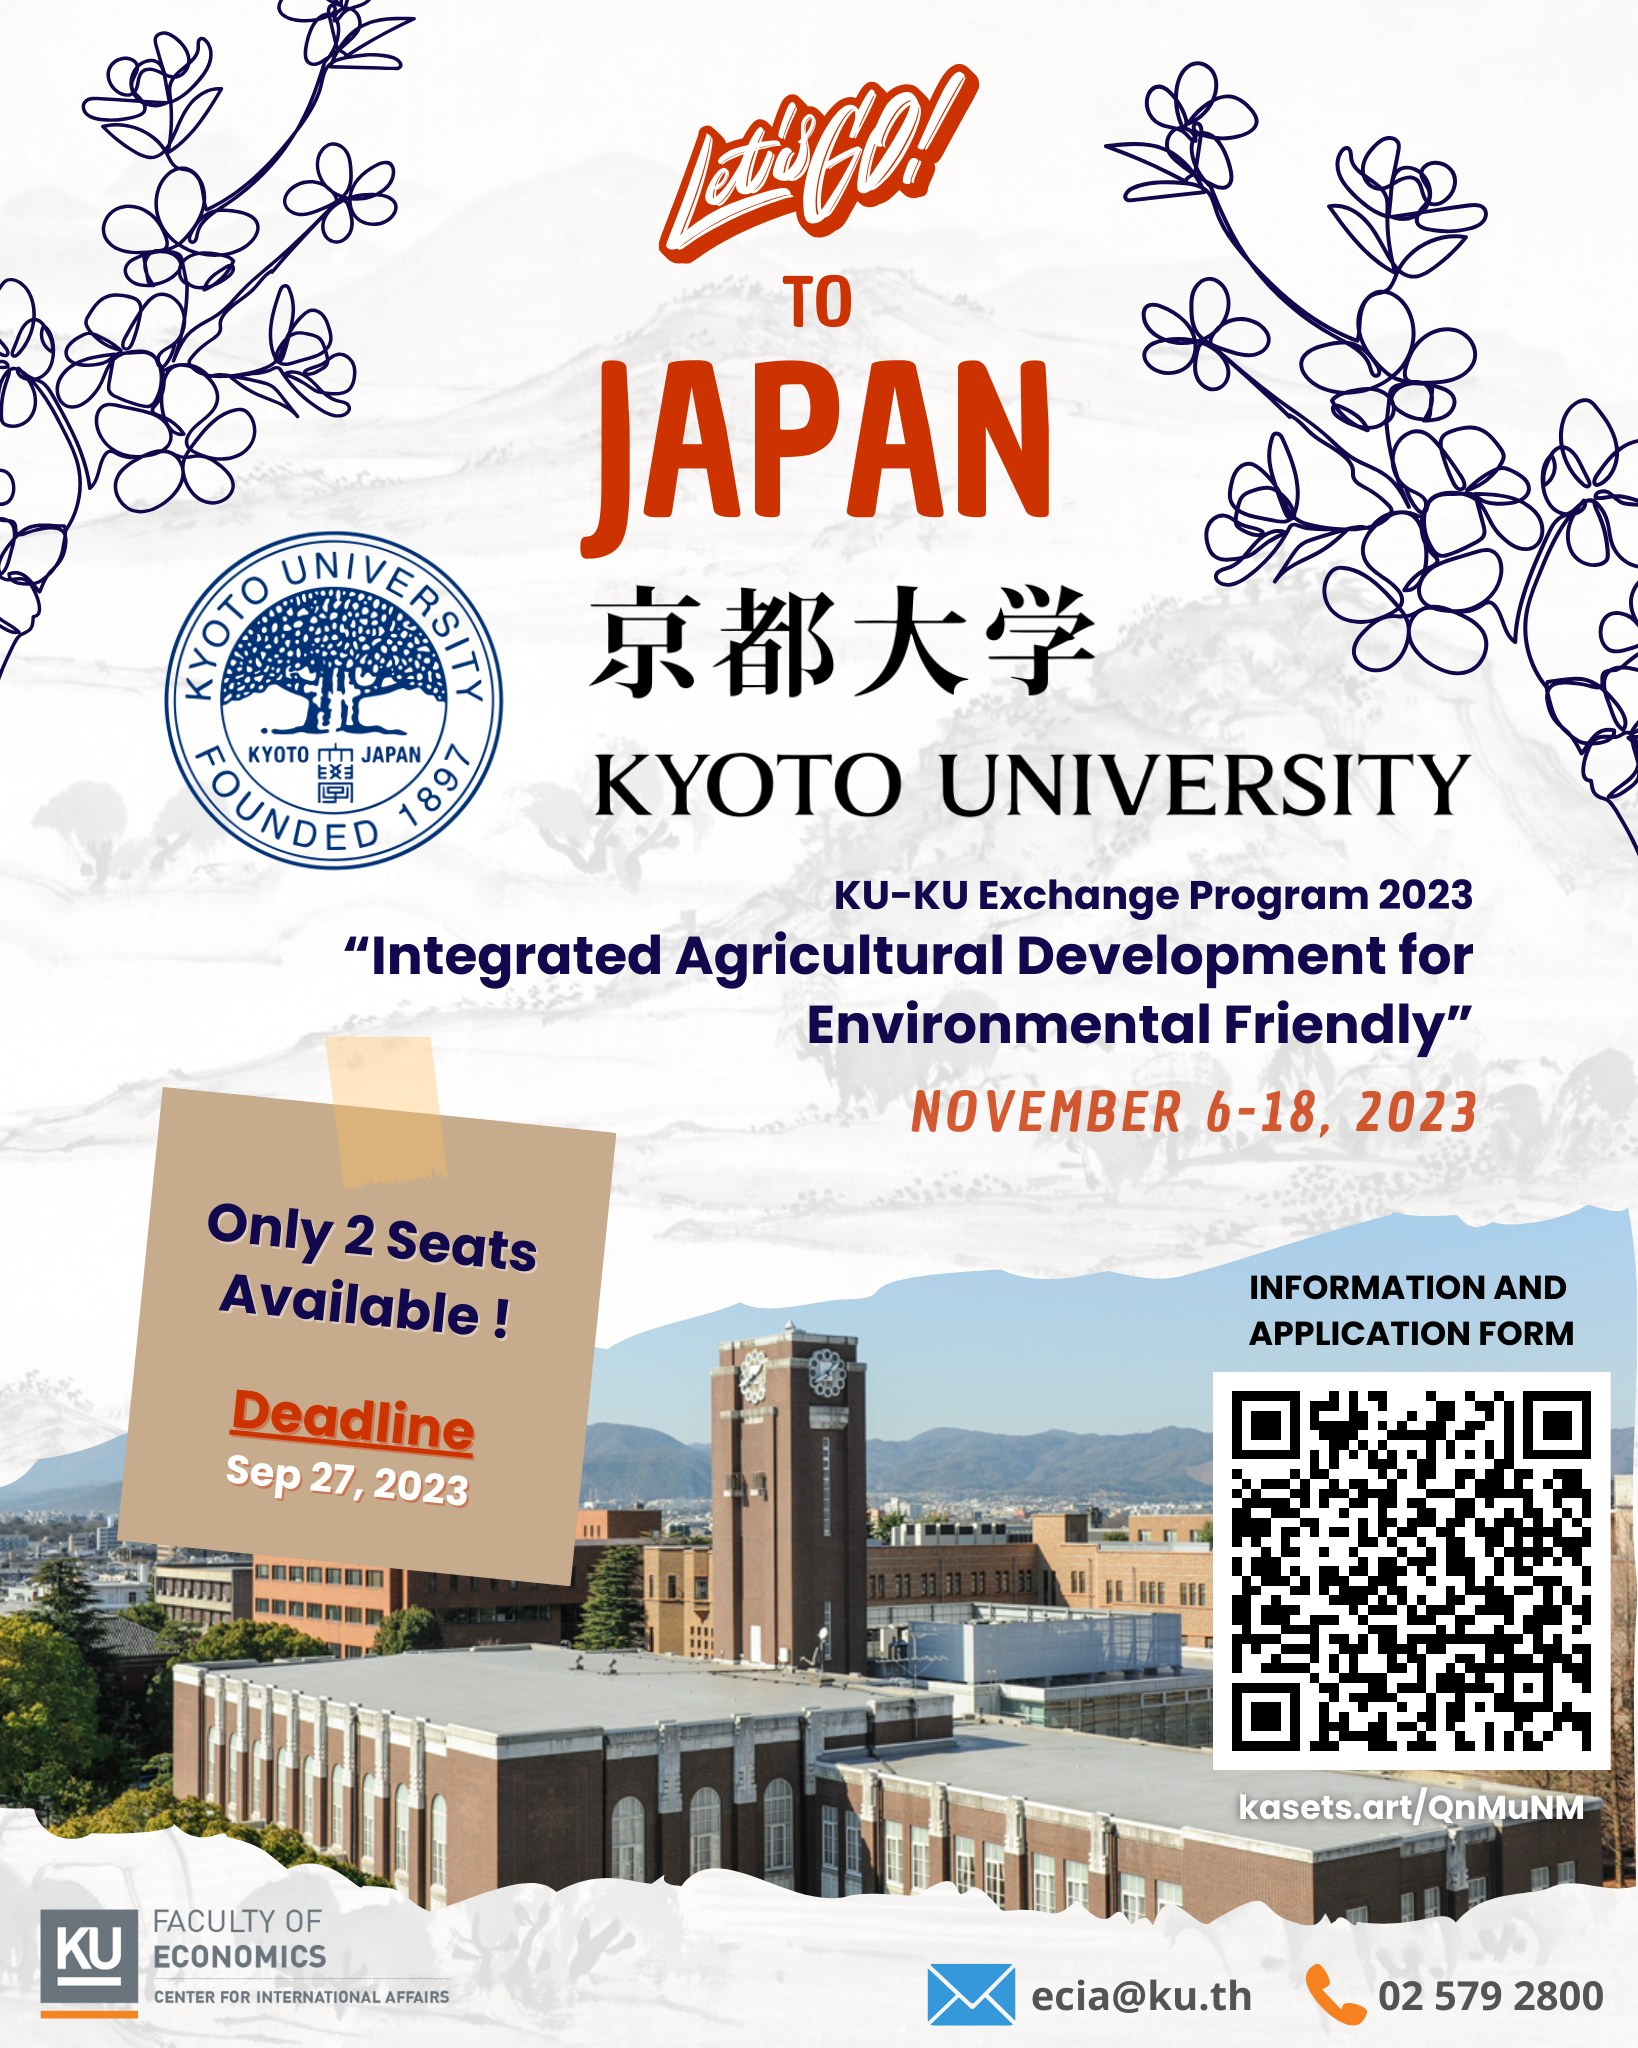 KU-KU Exchange Program 2023 in JAPAN